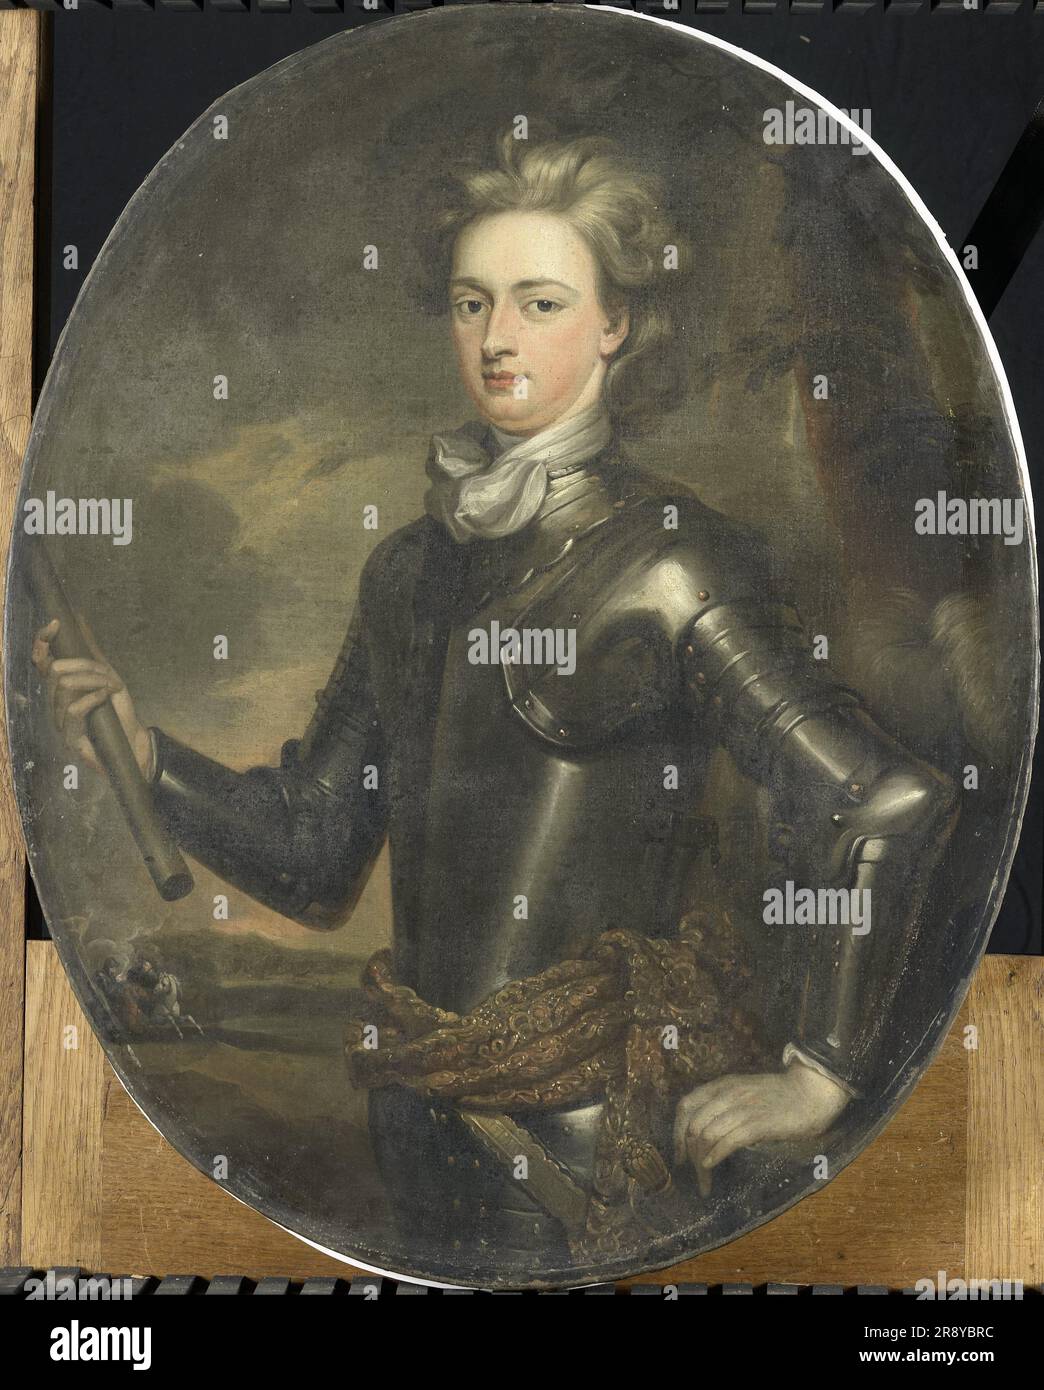 Porträt des ersten Earl of Albemarle, 1697. Sonstige Titel: Porträt eines jungen Offiziers. Kopie nach Gottfried Kneller. Stockfoto